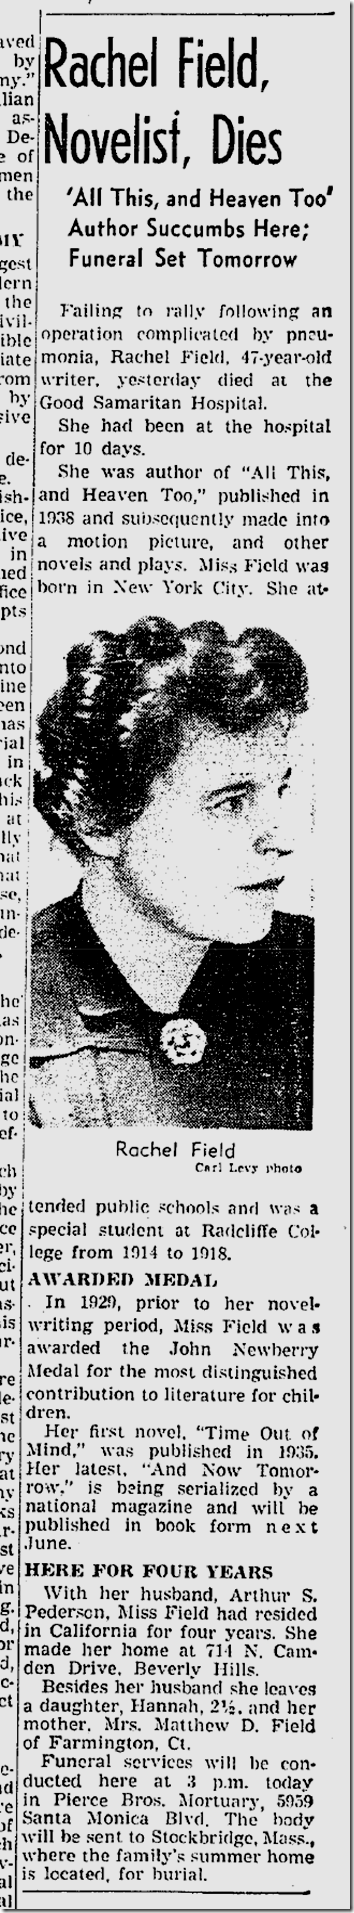 March 16, 1942, Rachel Field Dies 